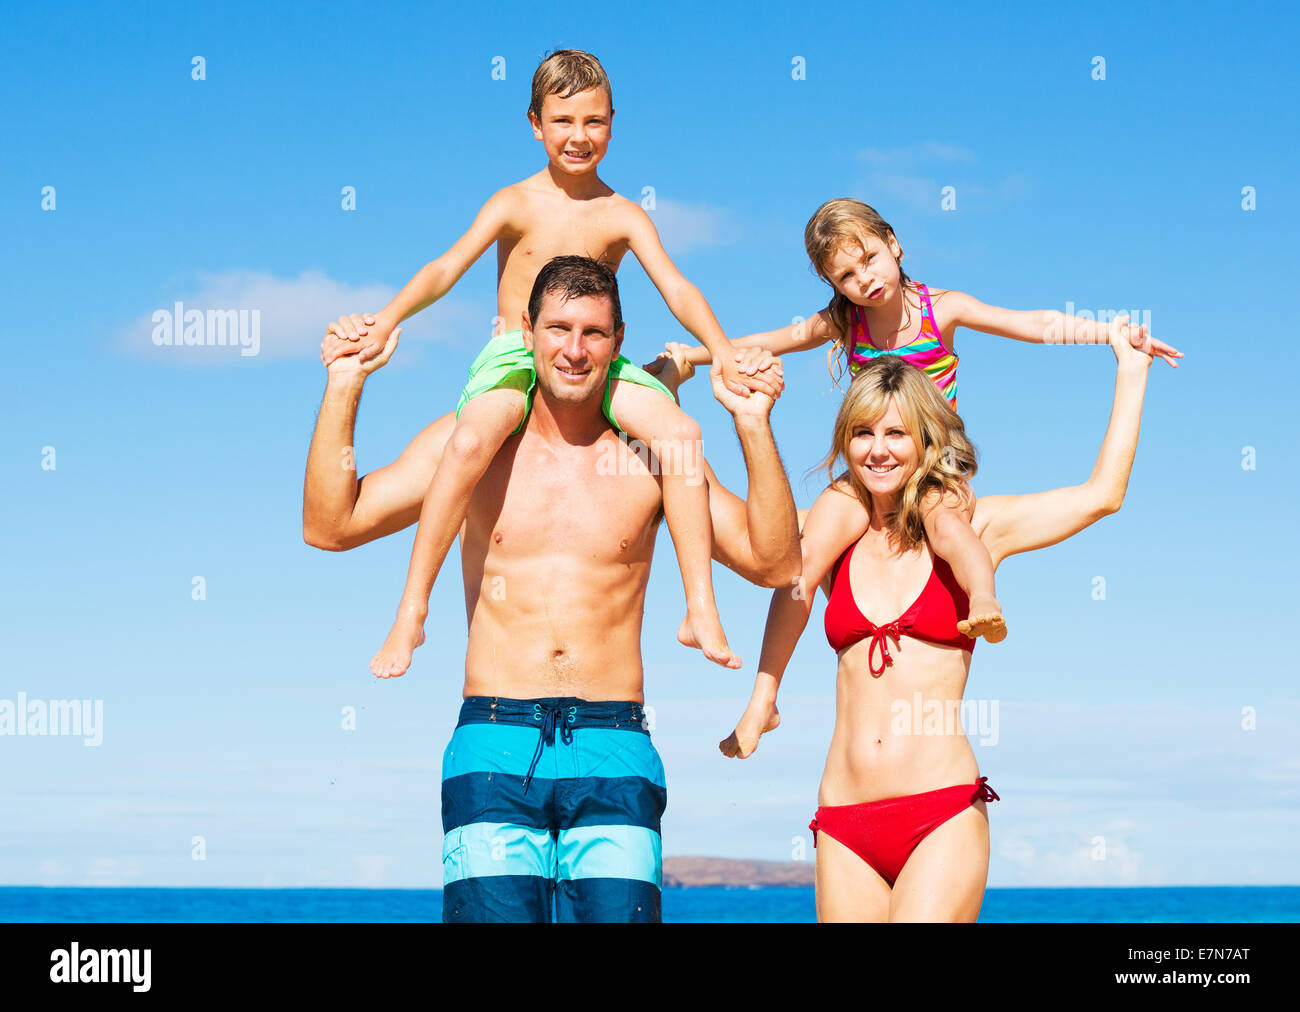 Happy Family Having Fun on the Beach Stock Photo